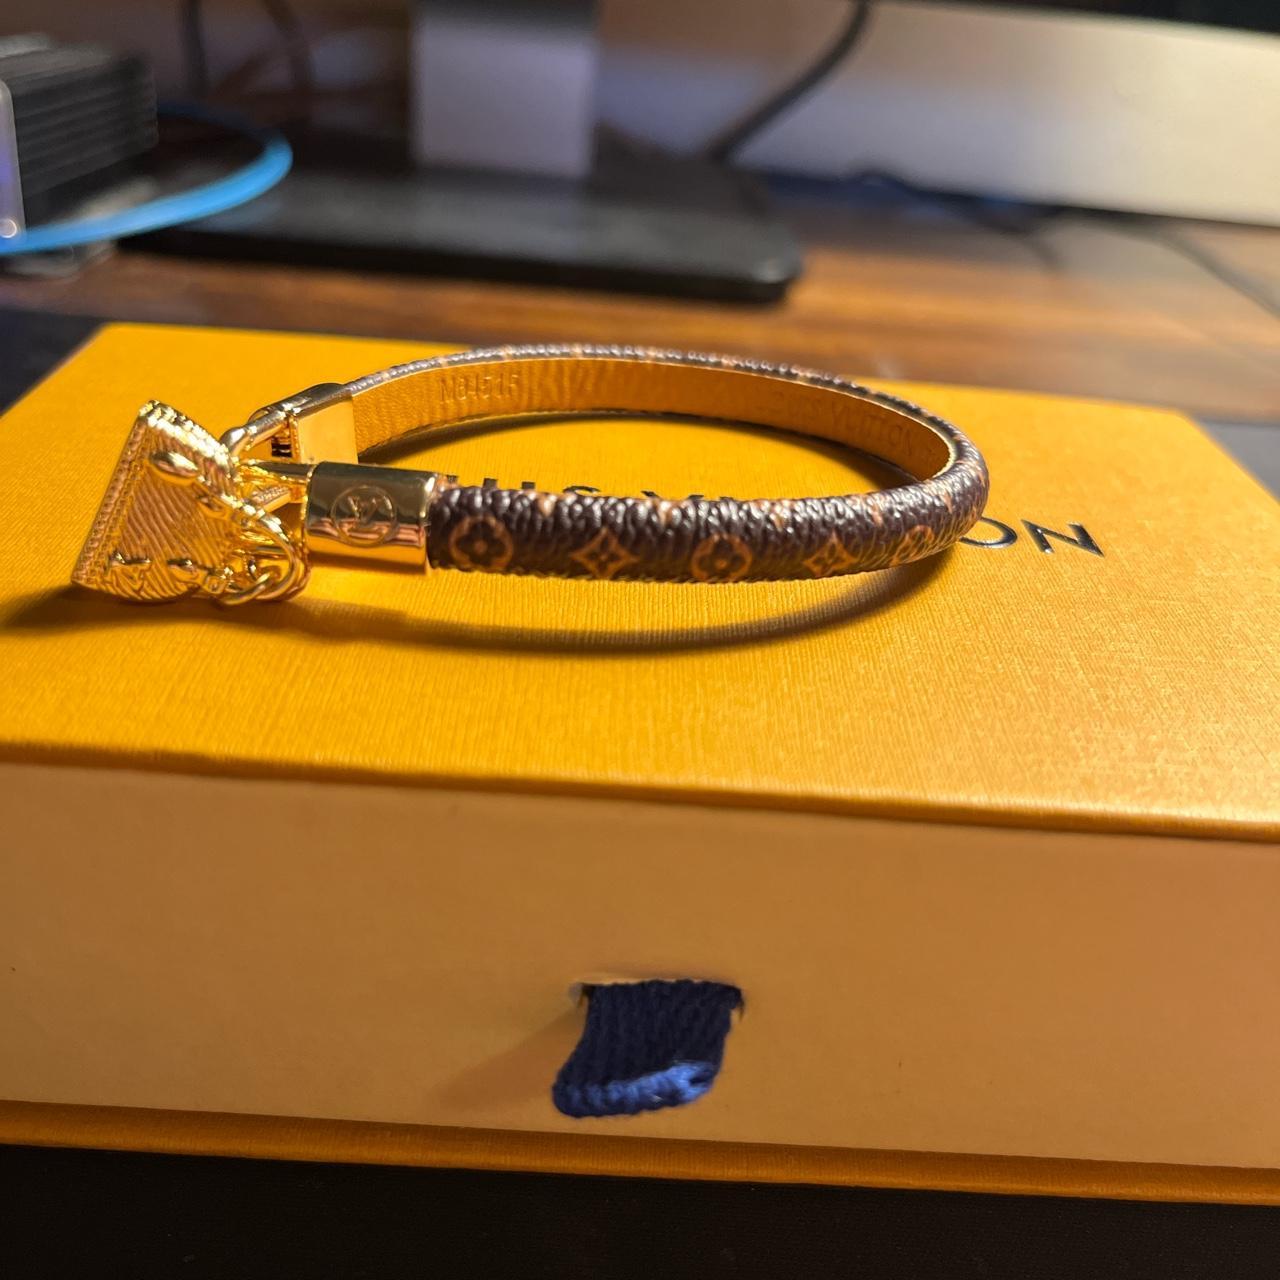 Louis Vuitton bracelet. Mint condition, unworn. - Depop